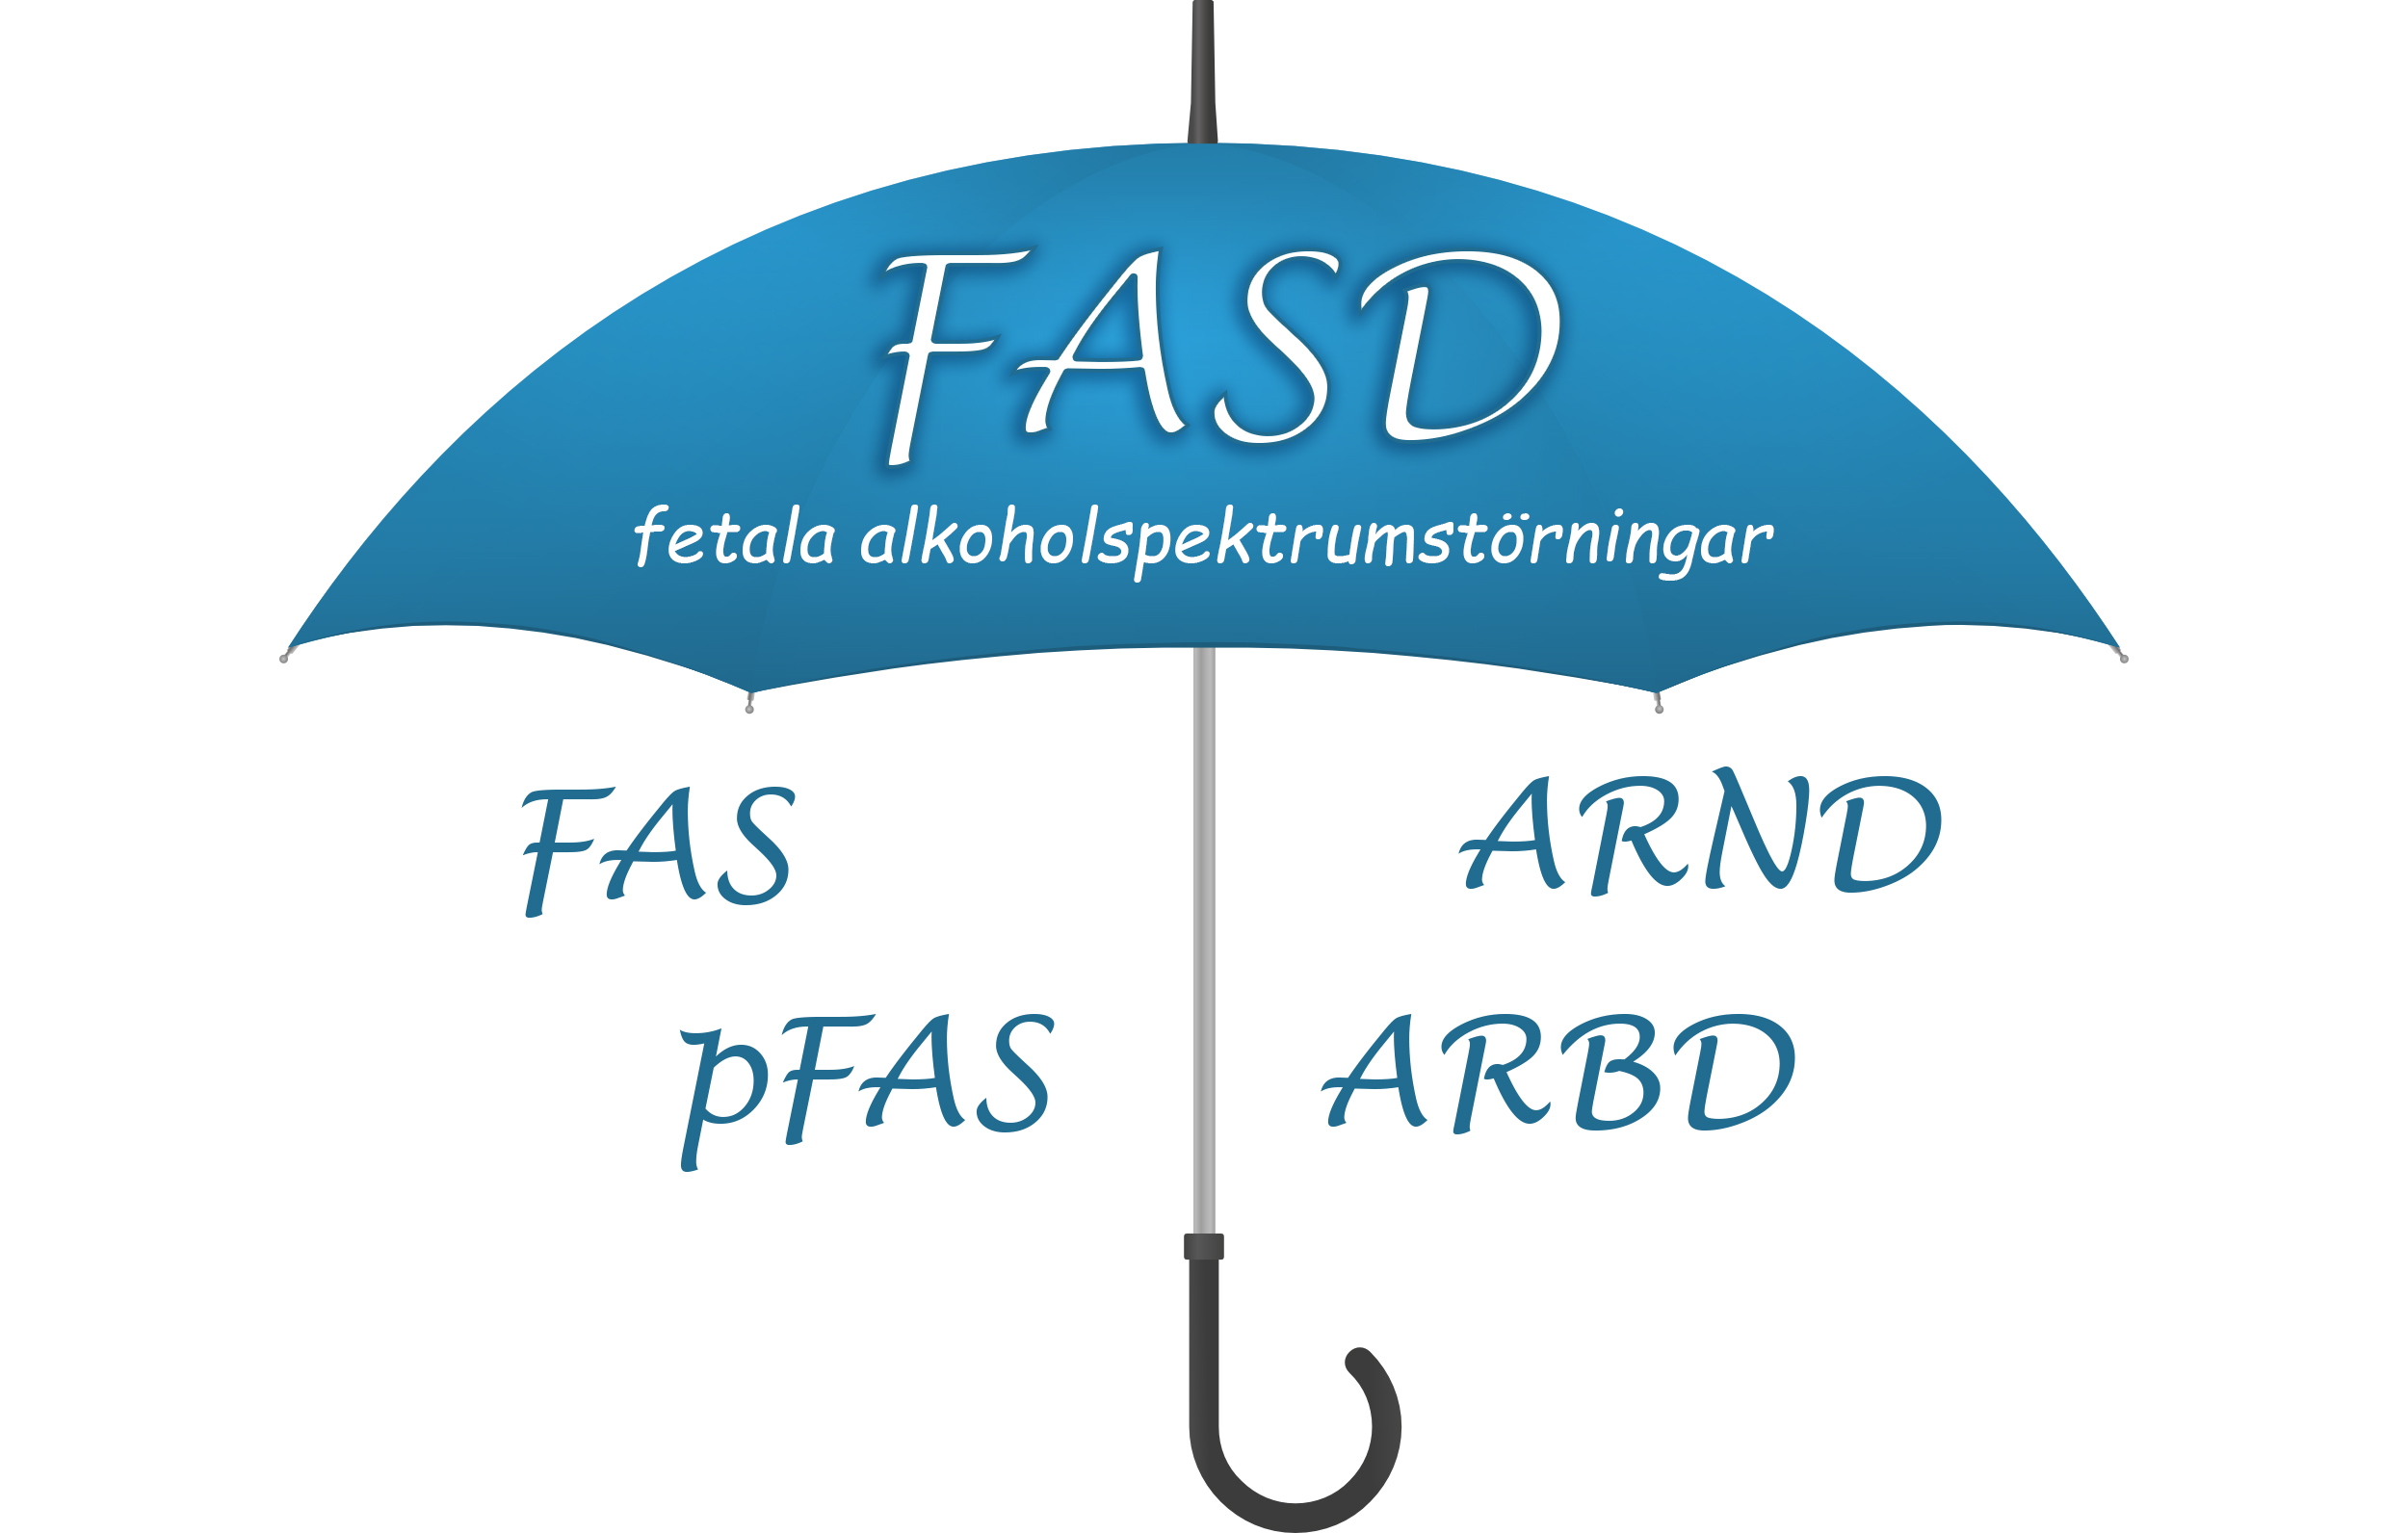 Bör FASD erkännas som diagnos? 